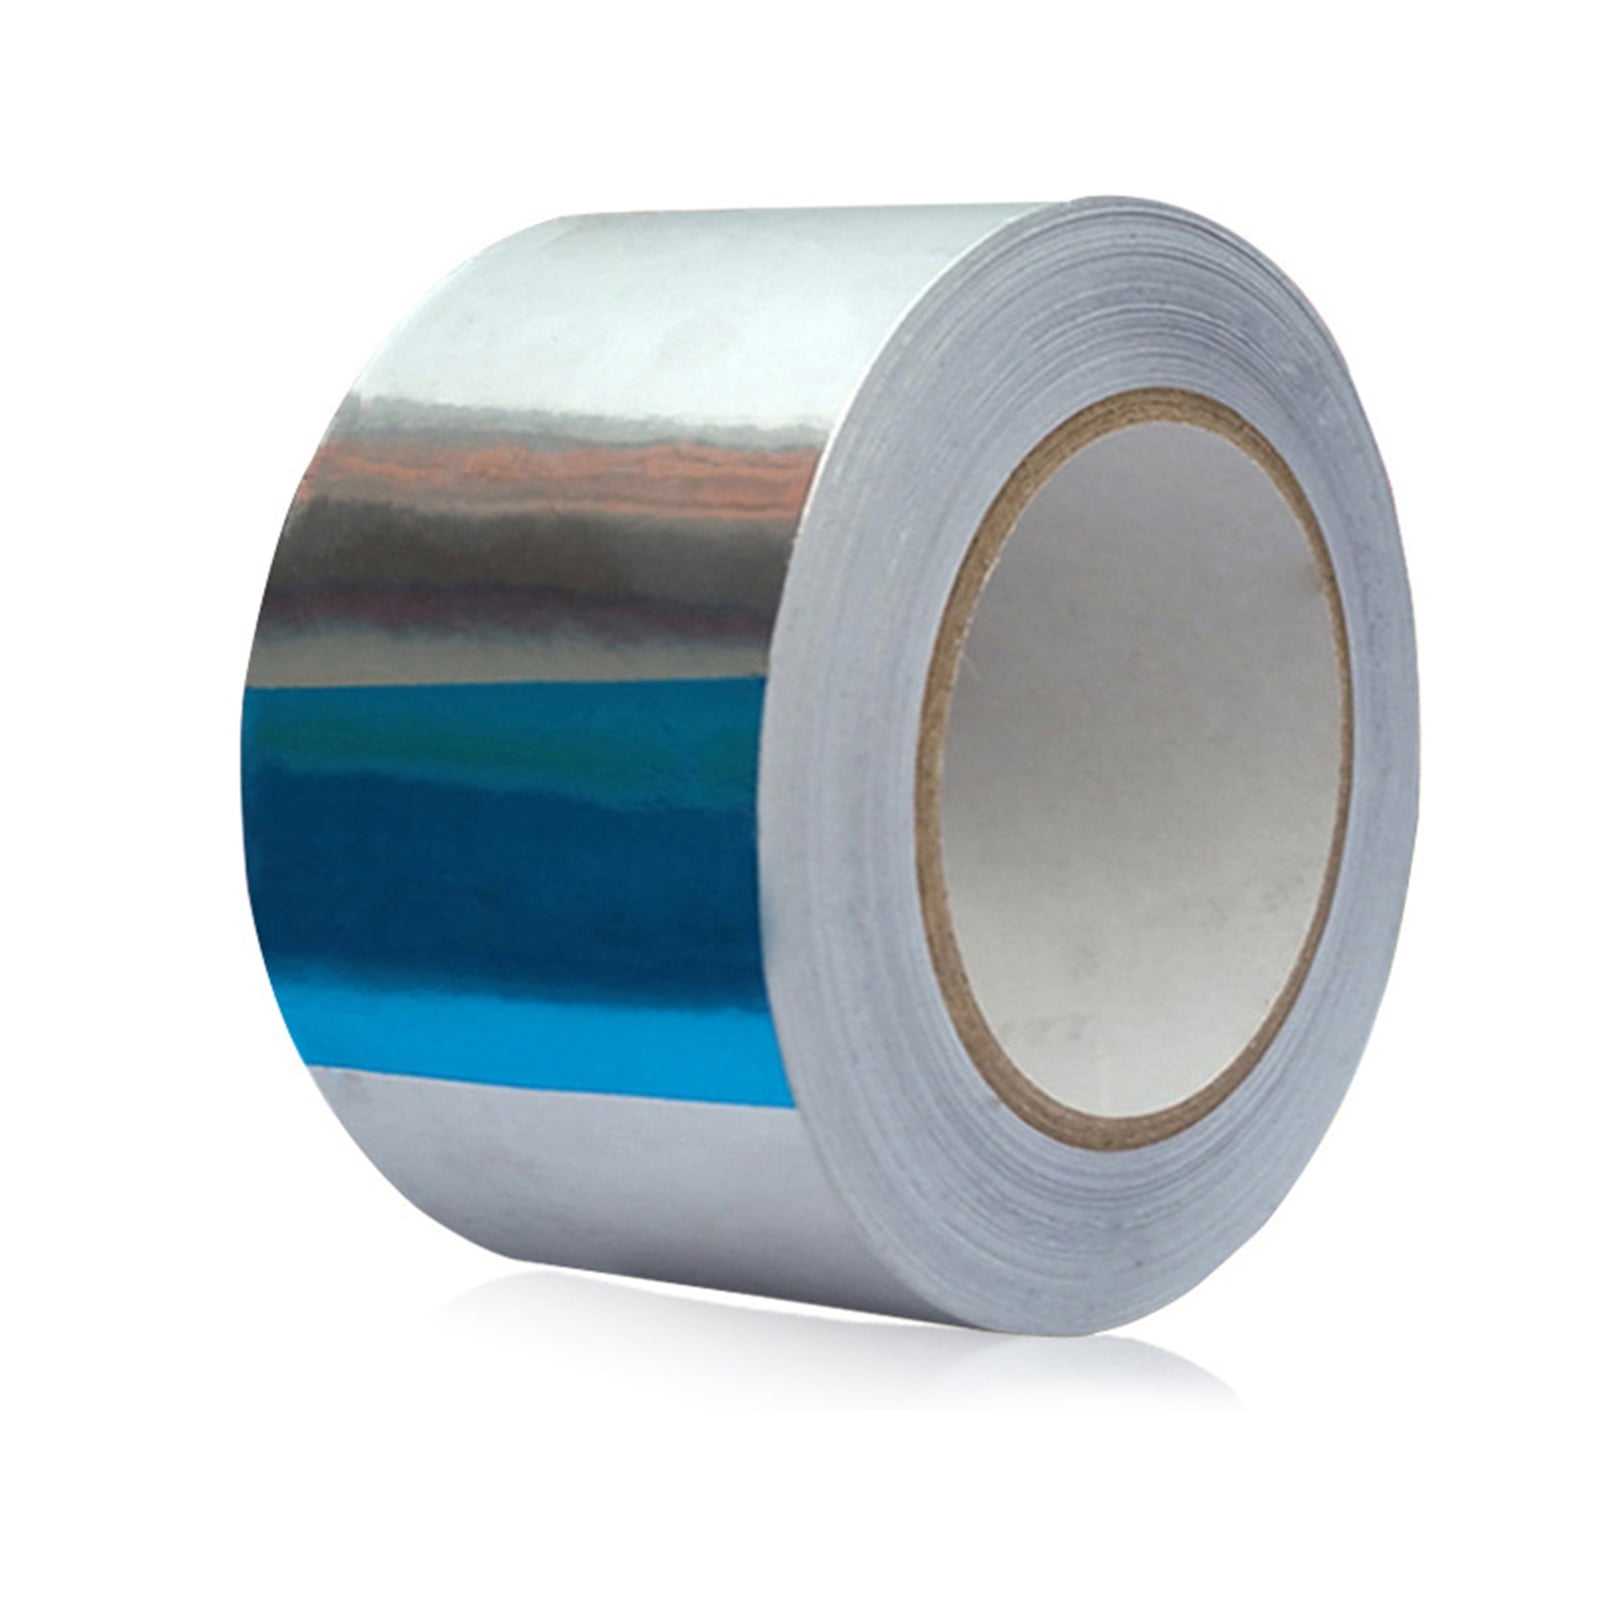 High Temperature Aluminum Tape  Aluminum Heat Resistant Tape - 20m  Aluminum Foil - Aliexpress